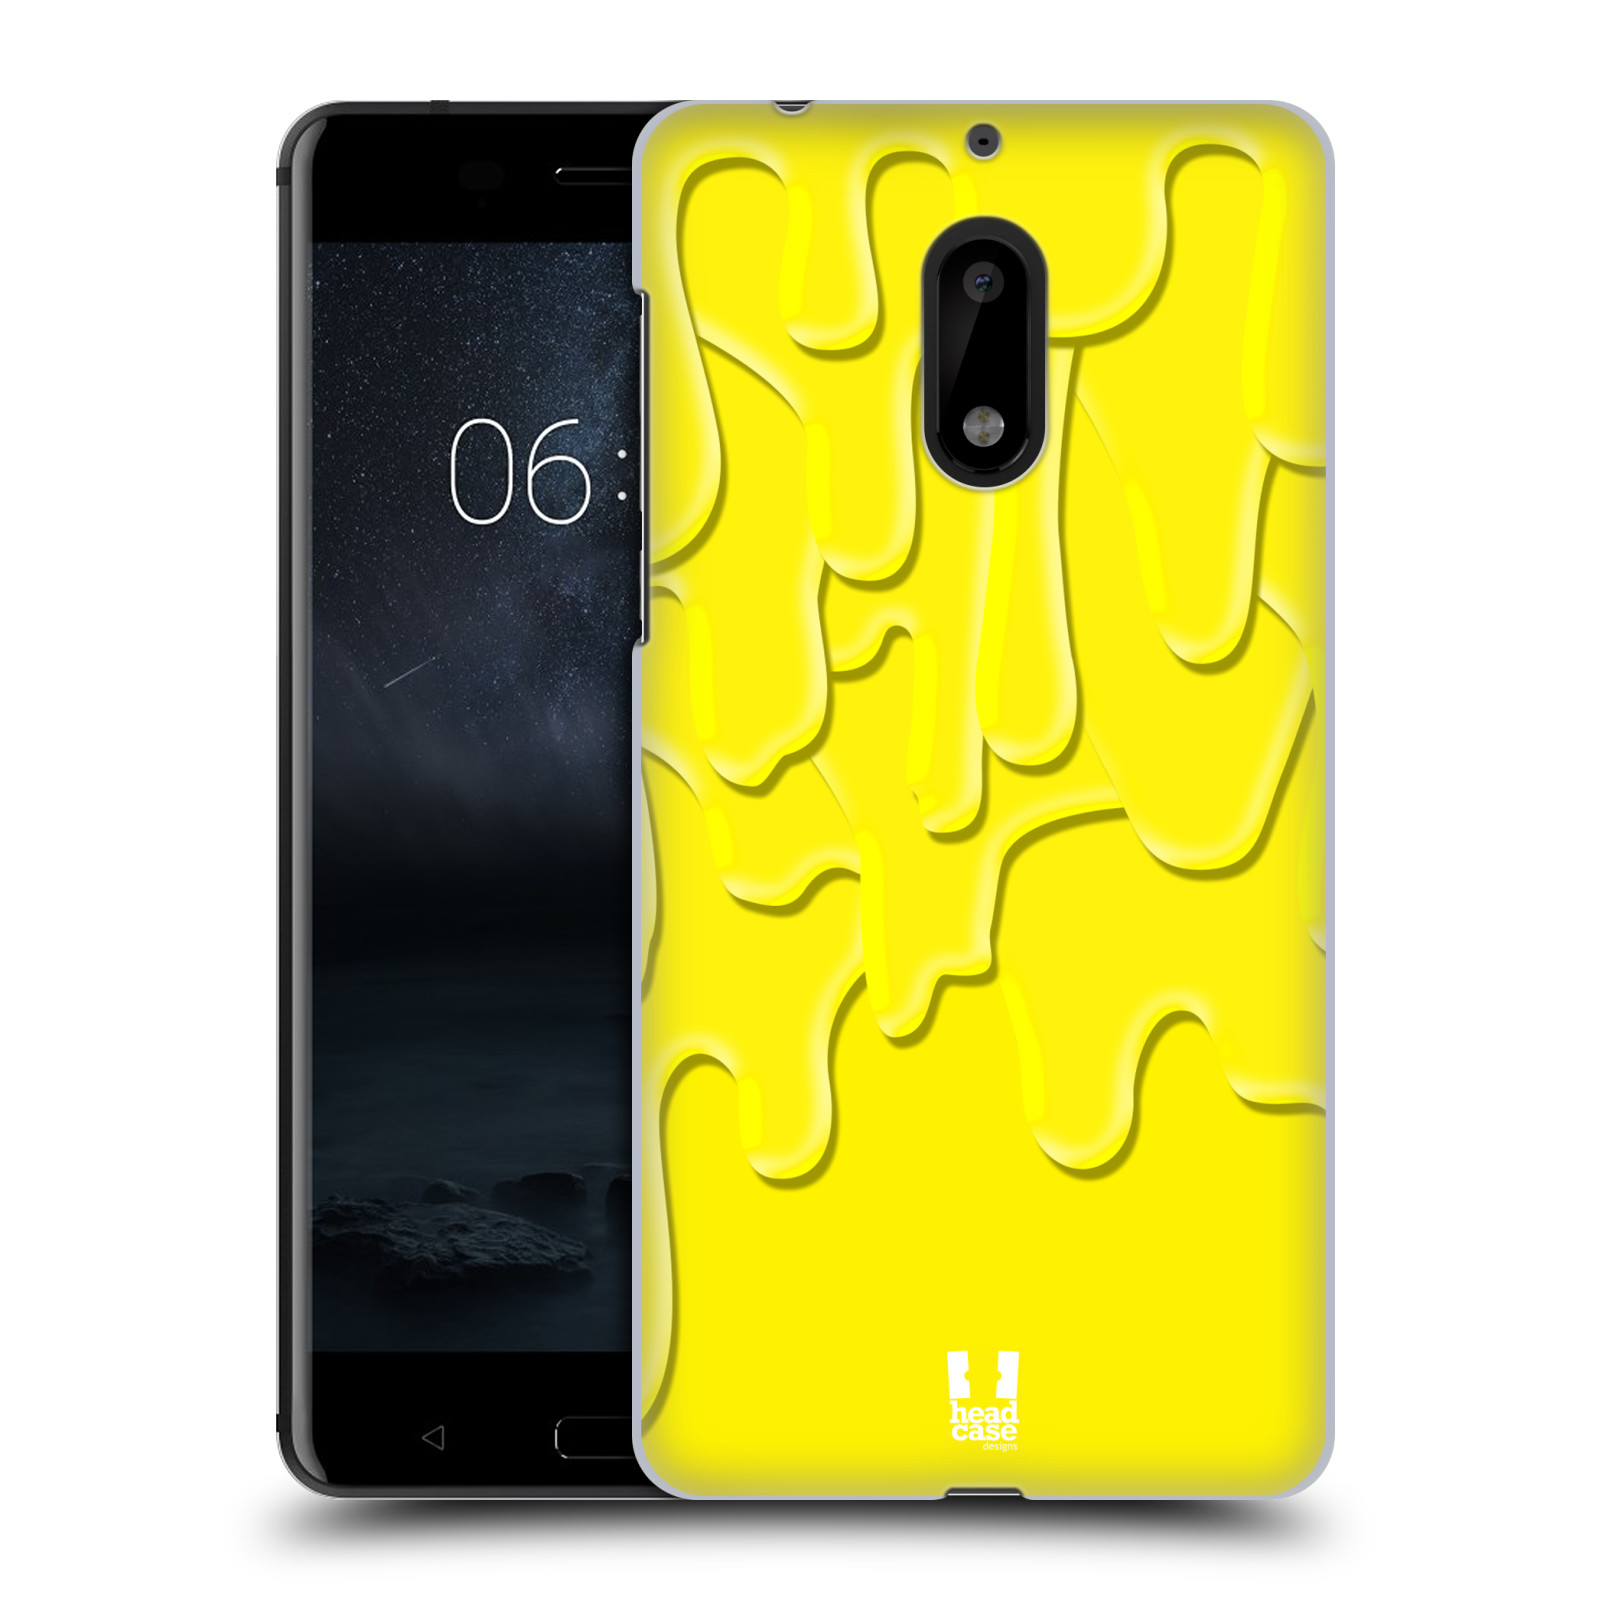 HEAD CASE plastový obal na mobil Nokia 6 vzor Barevná záplava žlutá